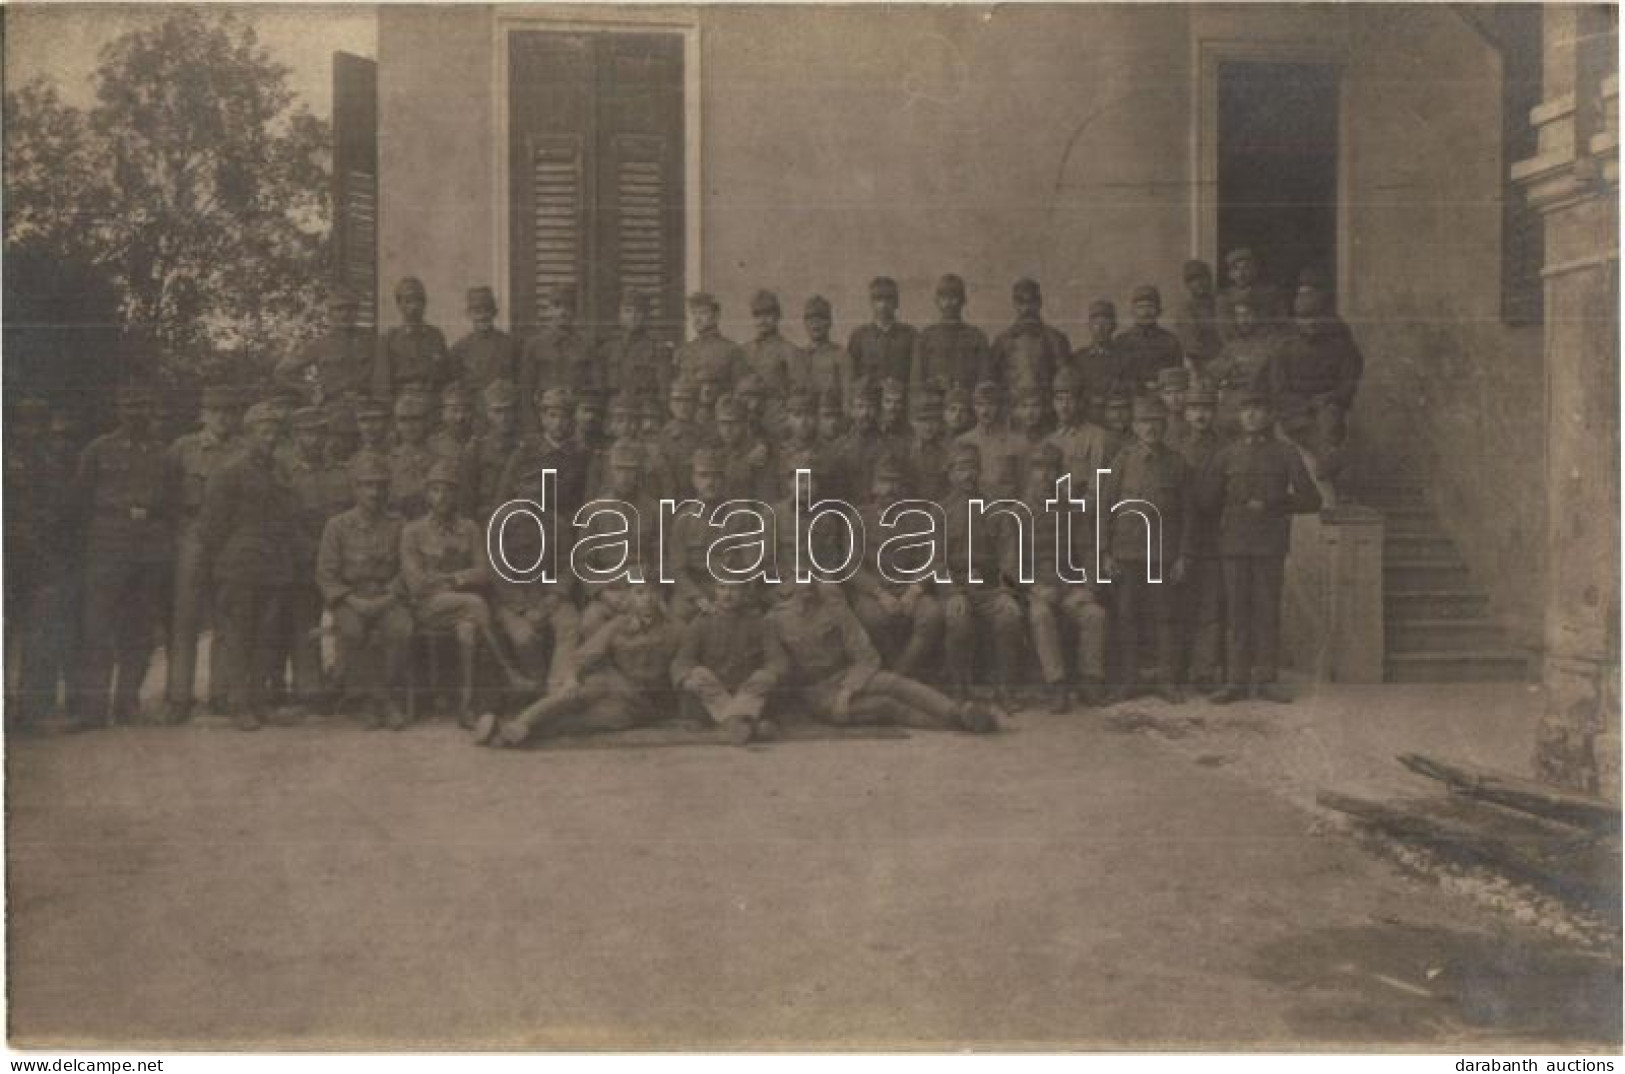 * T2 1918 Szikratávíró Osztrák-magyar Katonák Csoportképe / WWI Austro-Hungarian Telegraph Soldiers Group Photo - Unclassified